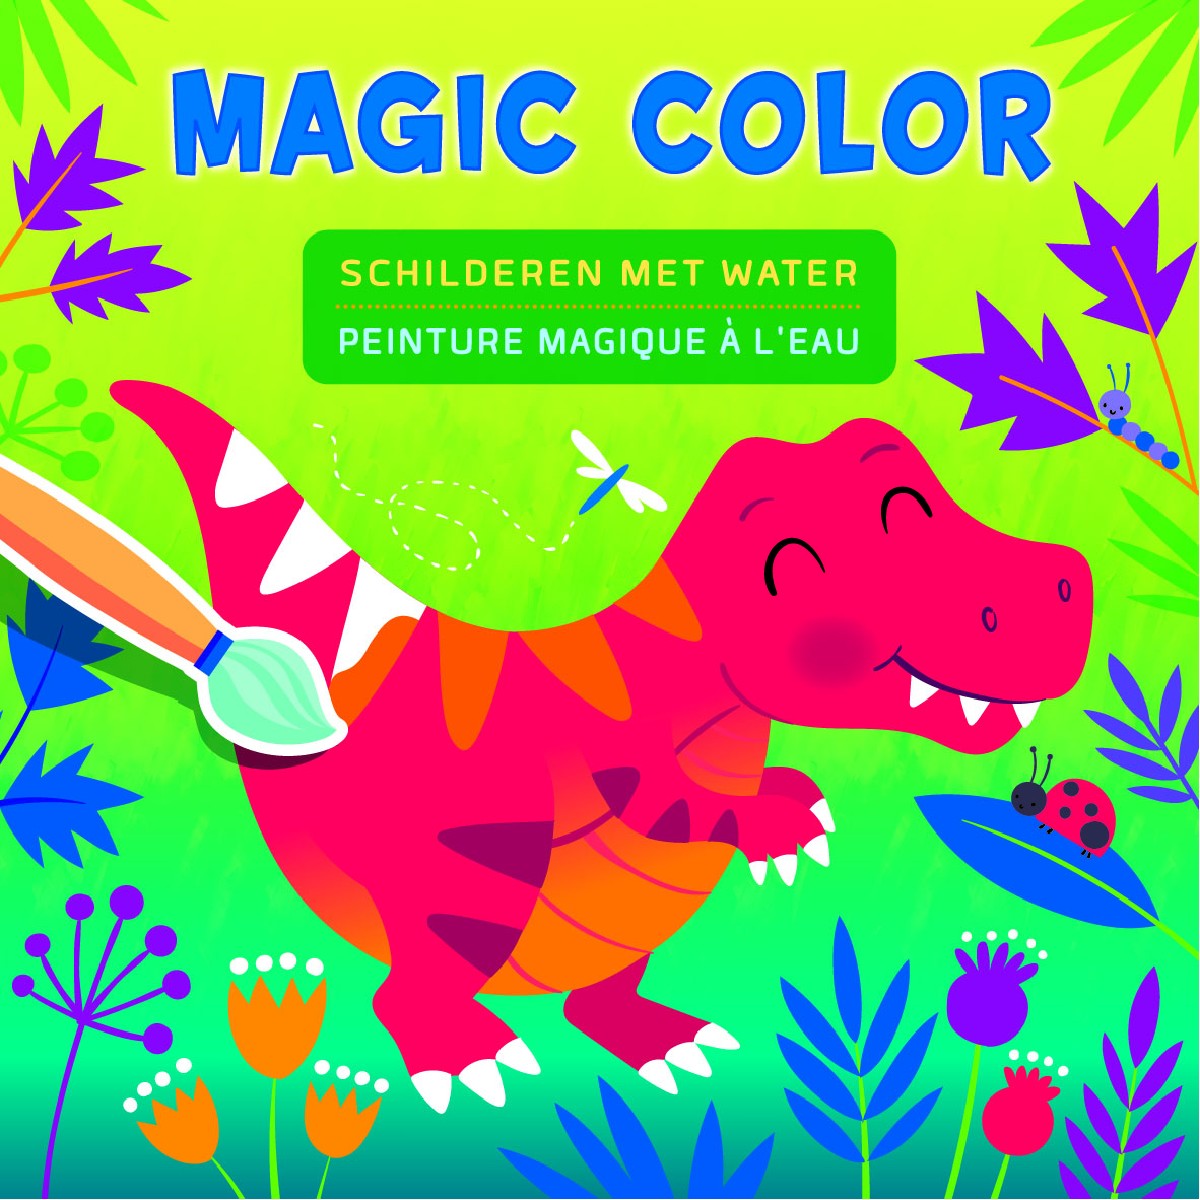 Unicorn Magic Color schilderen met water / Unicorn Peinture Magique à l'eau, Mystères, 9789044755473